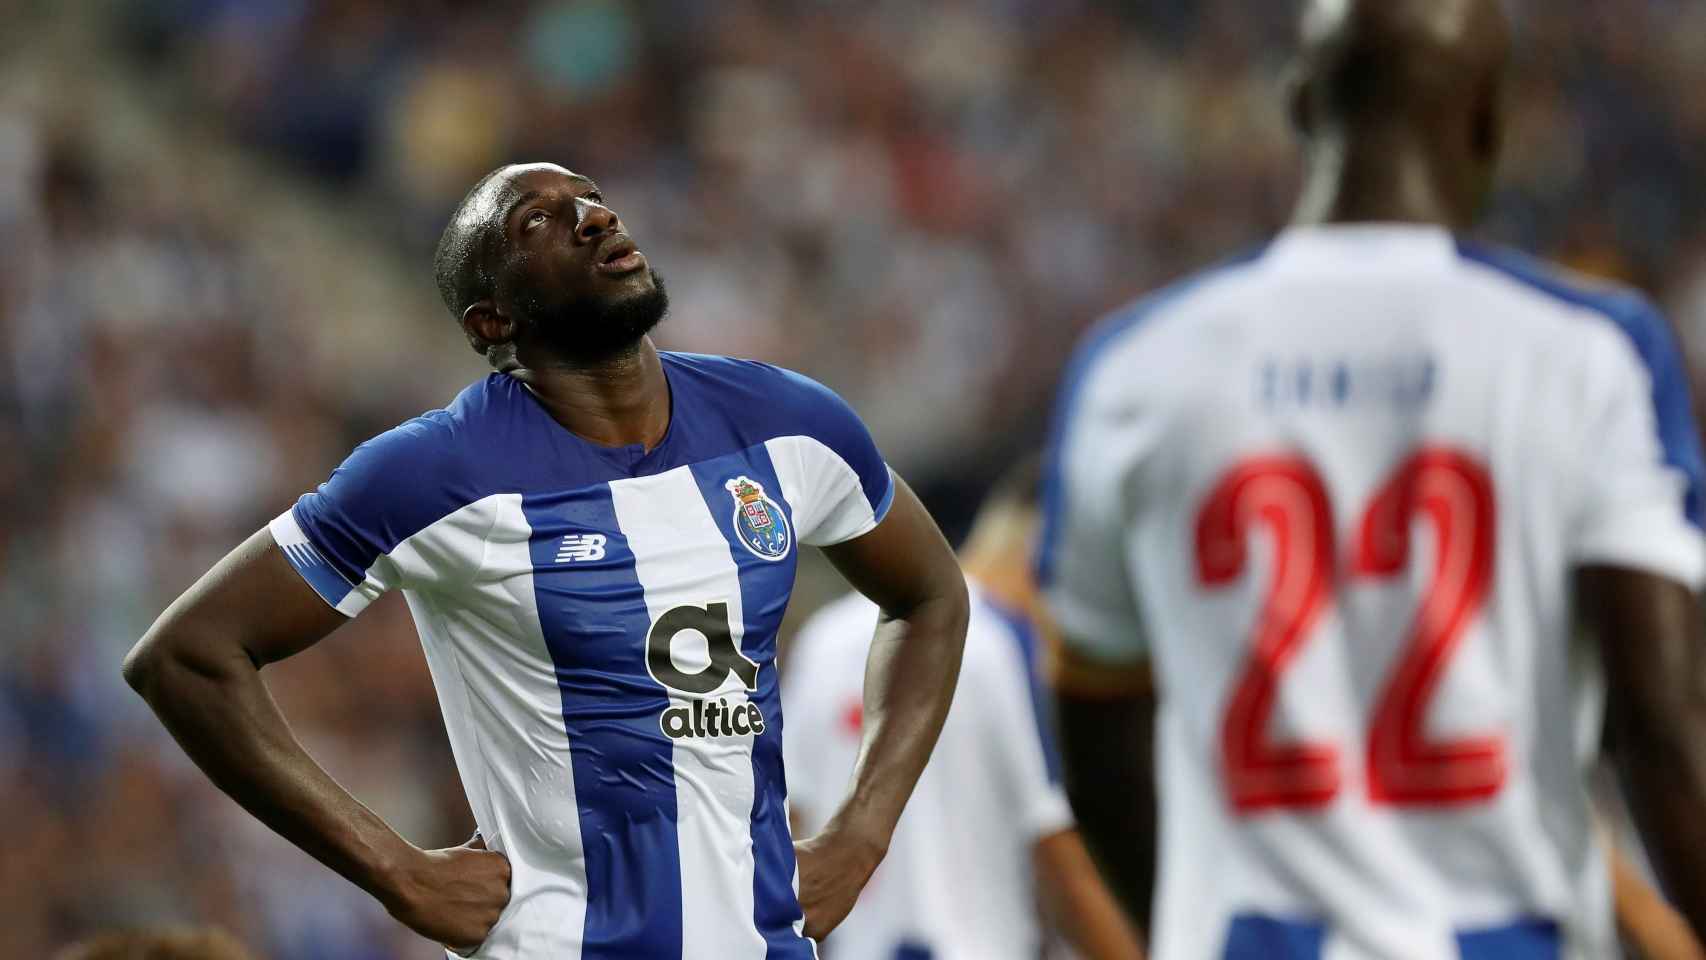 Reacción de los jugadores del Oporto tras quedar eliminados de la Champions